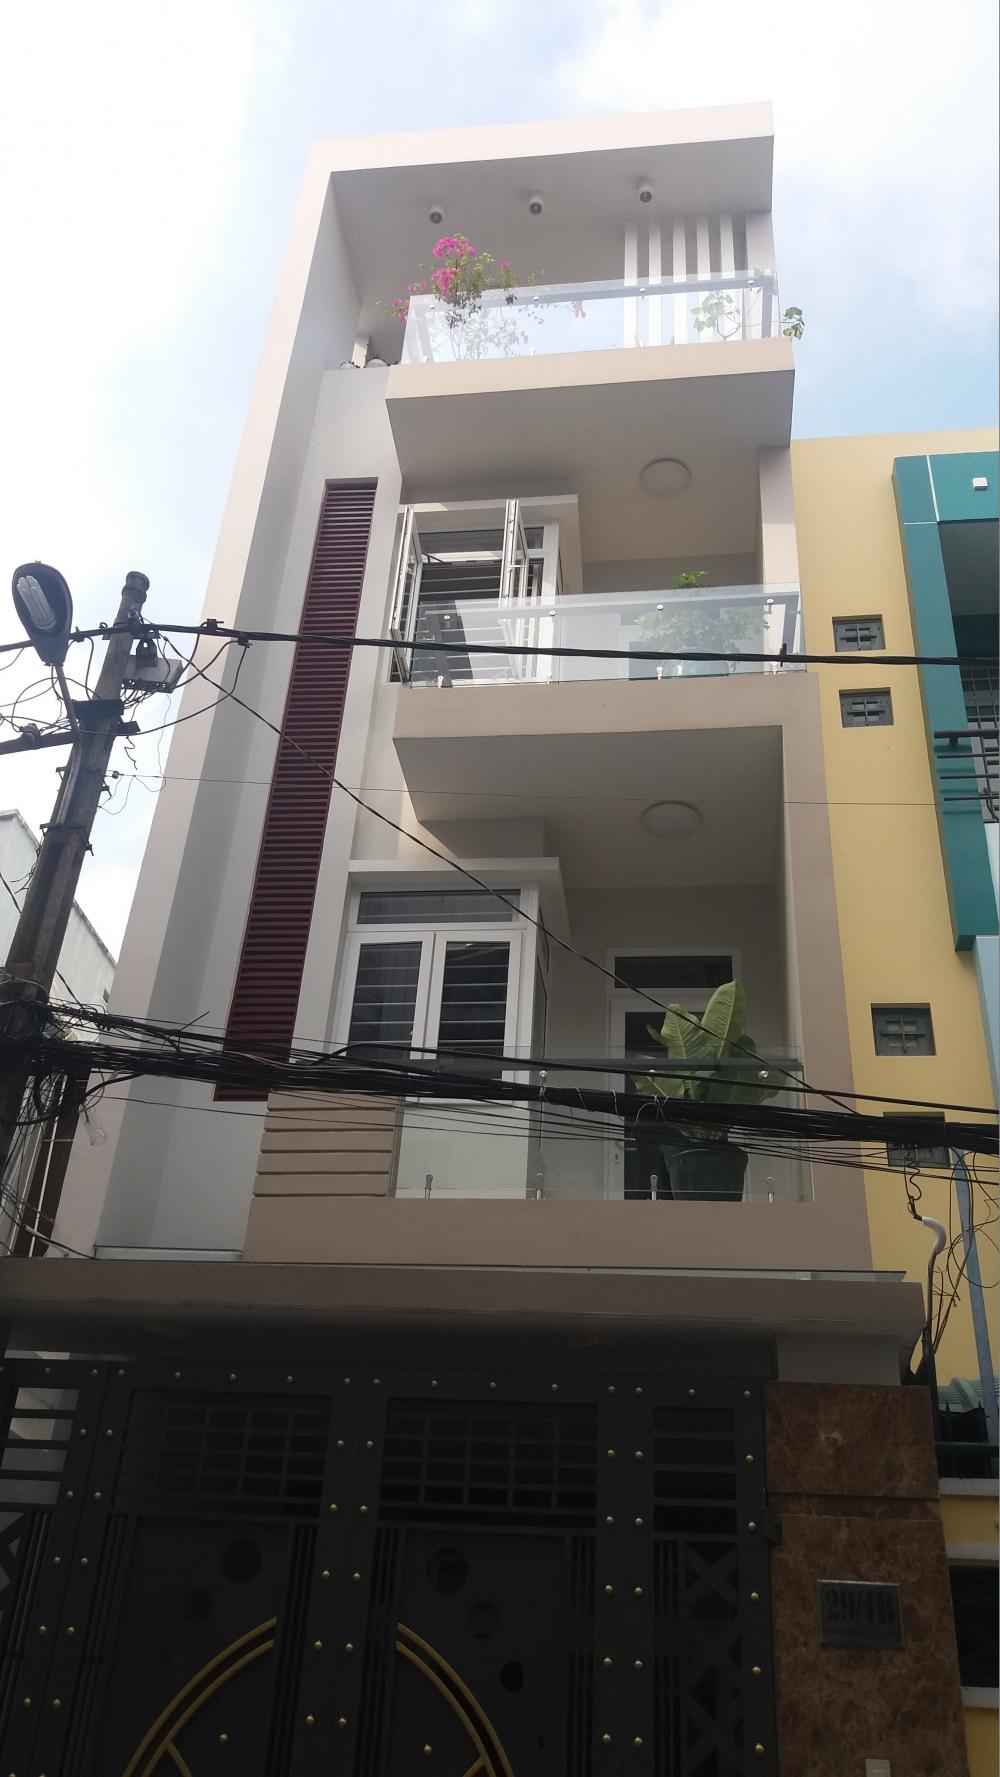 Cho thuê nhà hẻm số 7 Nguyễn Trãi 4m x 20m, trệt, 2 lầu, sân thượng, giá 16 triệu/tháng